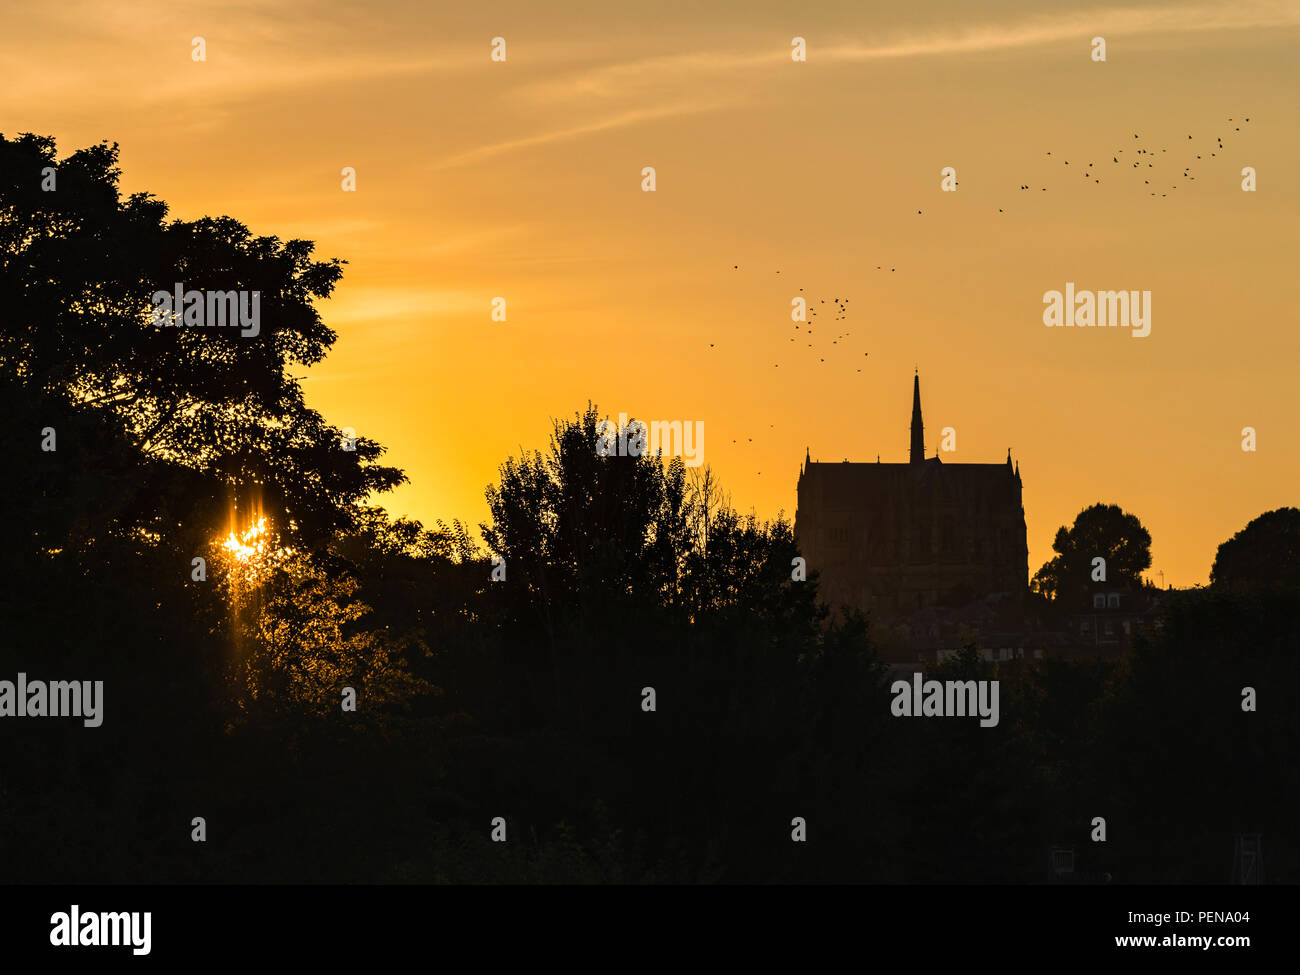 Vue sur le coucher de soleil visible à travers les arbres avec une cathédrale et des arbres présentant à Arundel, West Sussex, Angleterre, Royaume-Uni. Coucher de soleil ciel orange. Banque D'Images